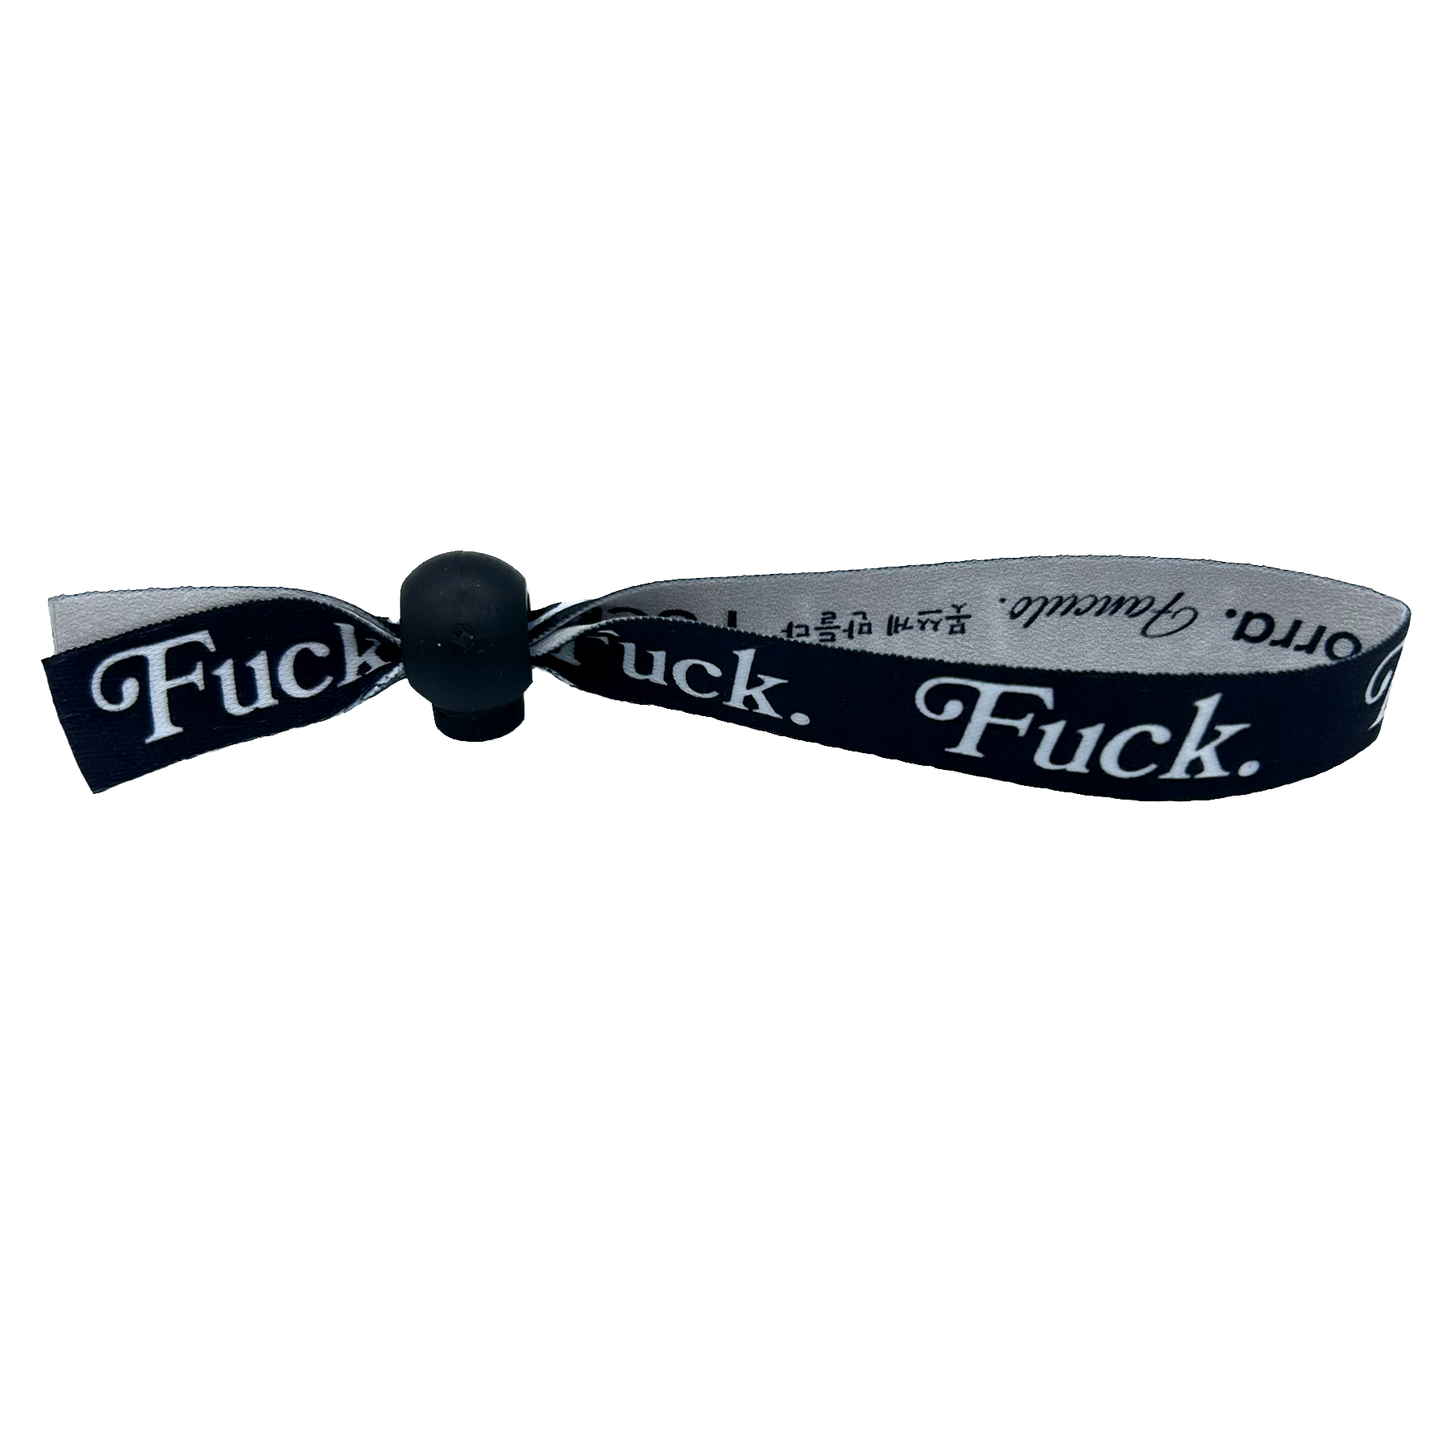 Fuck. Festival Bracelet